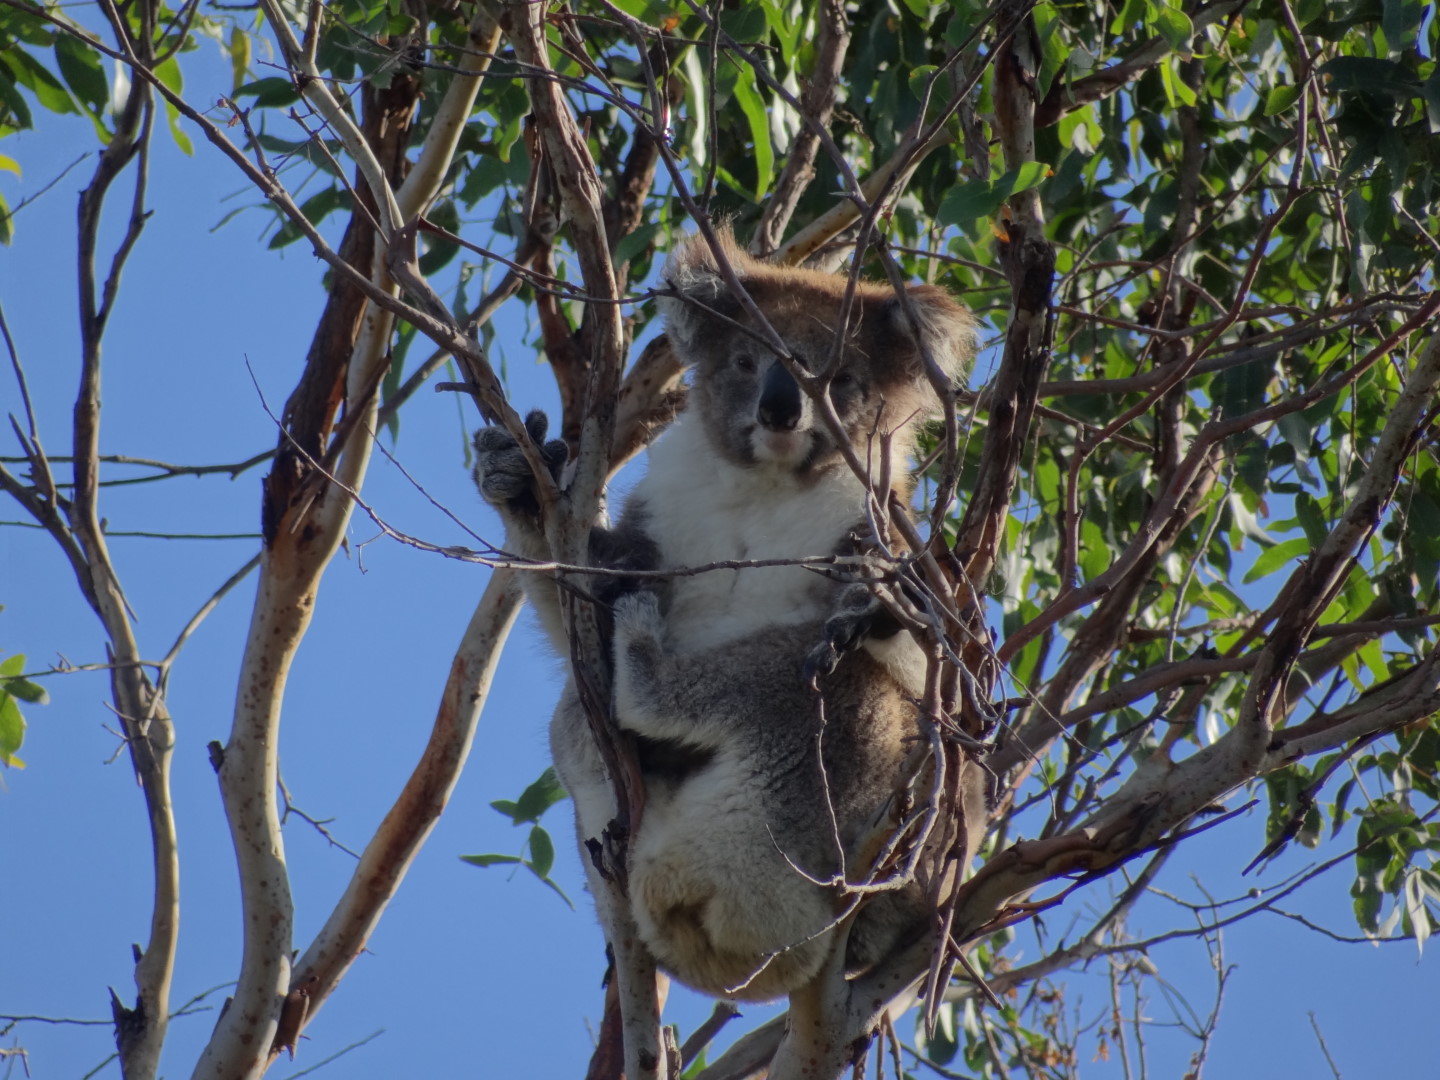 Koalas in the trees